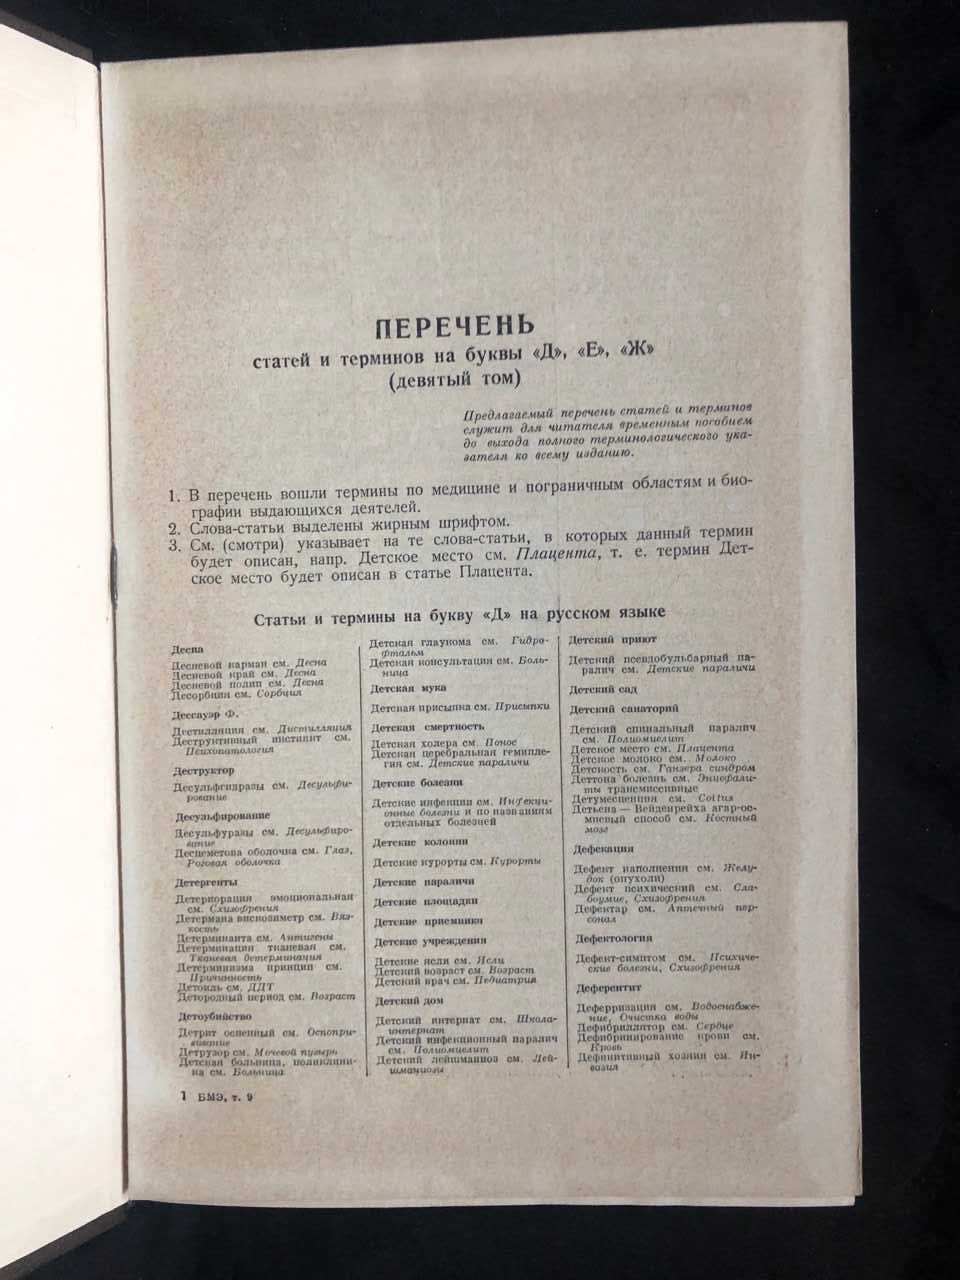 Большая медицинская энциклопедия 1959 г 9 том